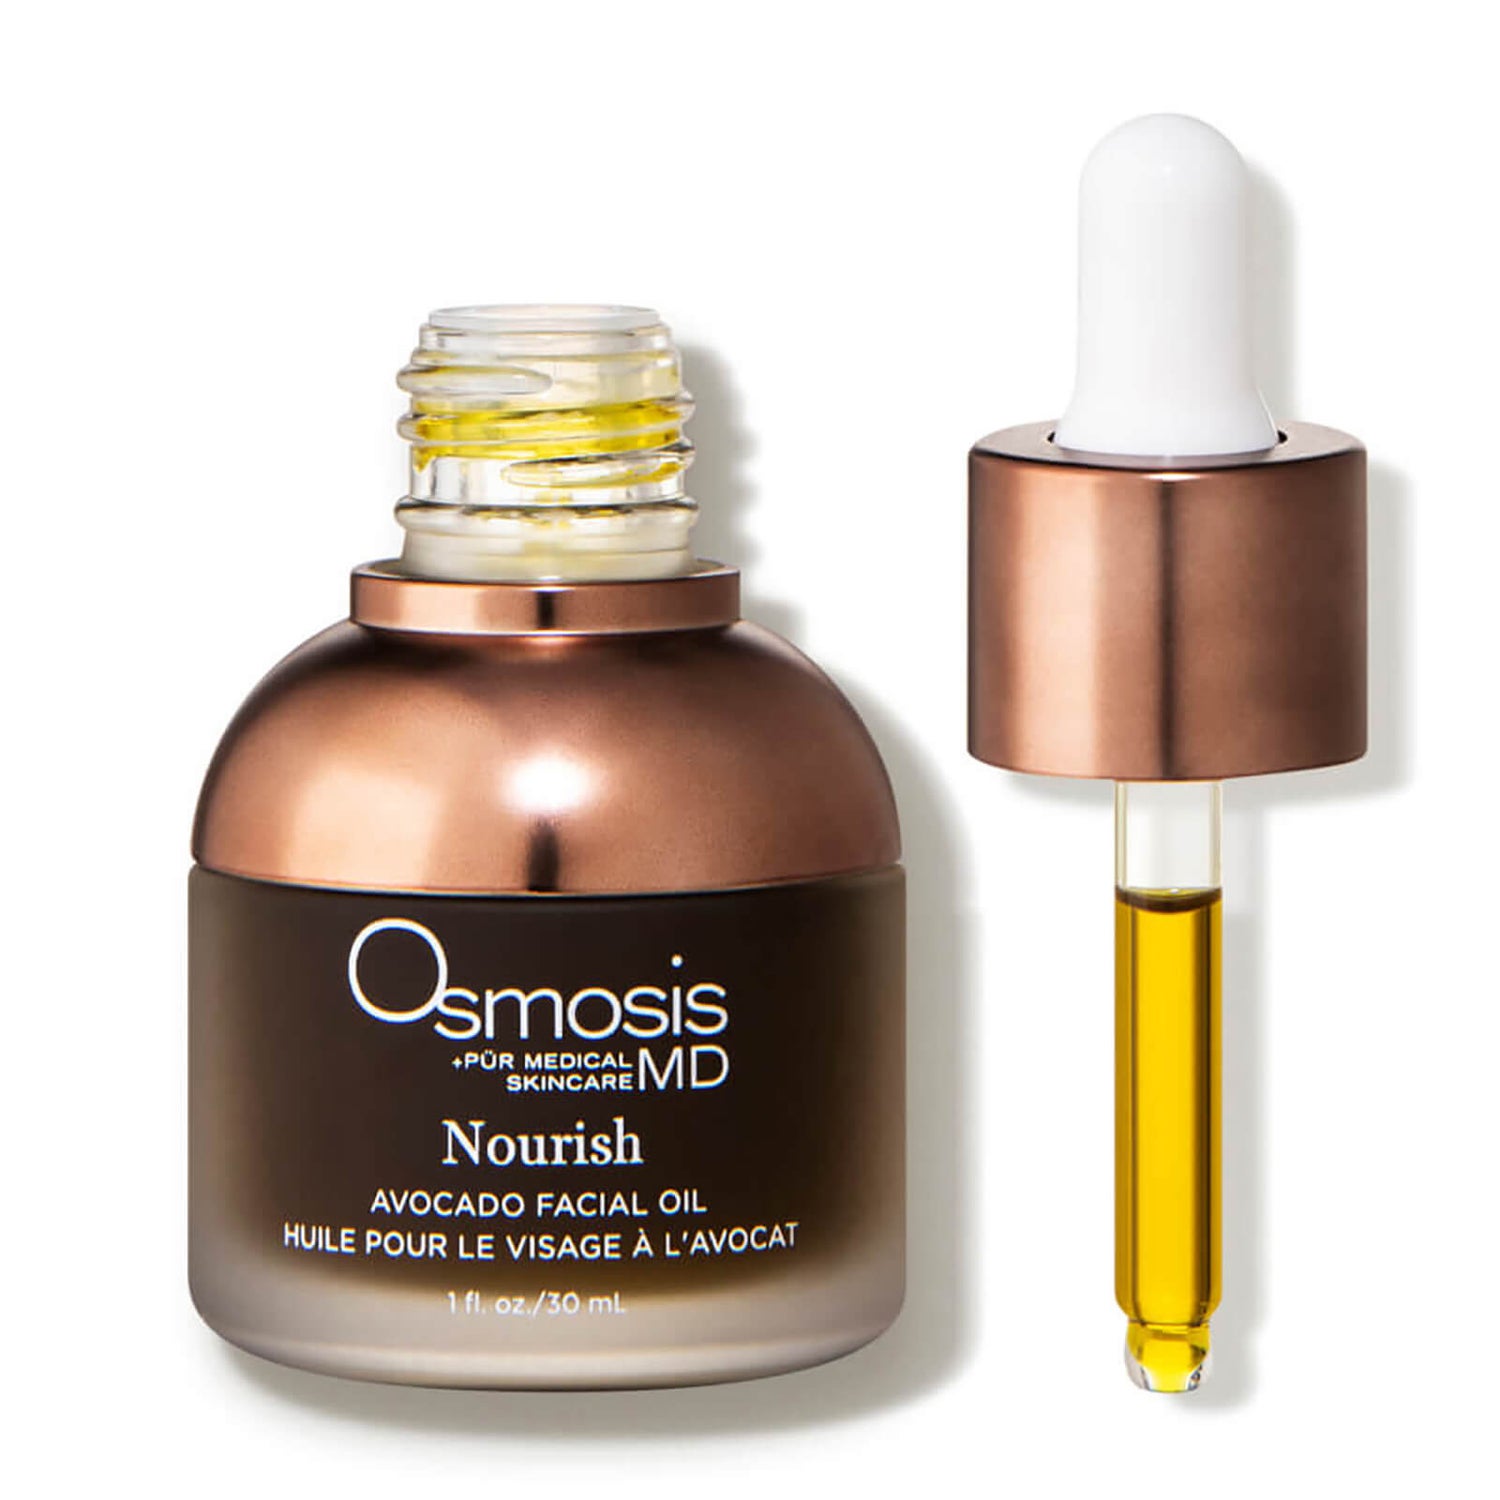 Osmosis +Beauty Nourish - Avocado Facial Oil (1 fl. oz.)